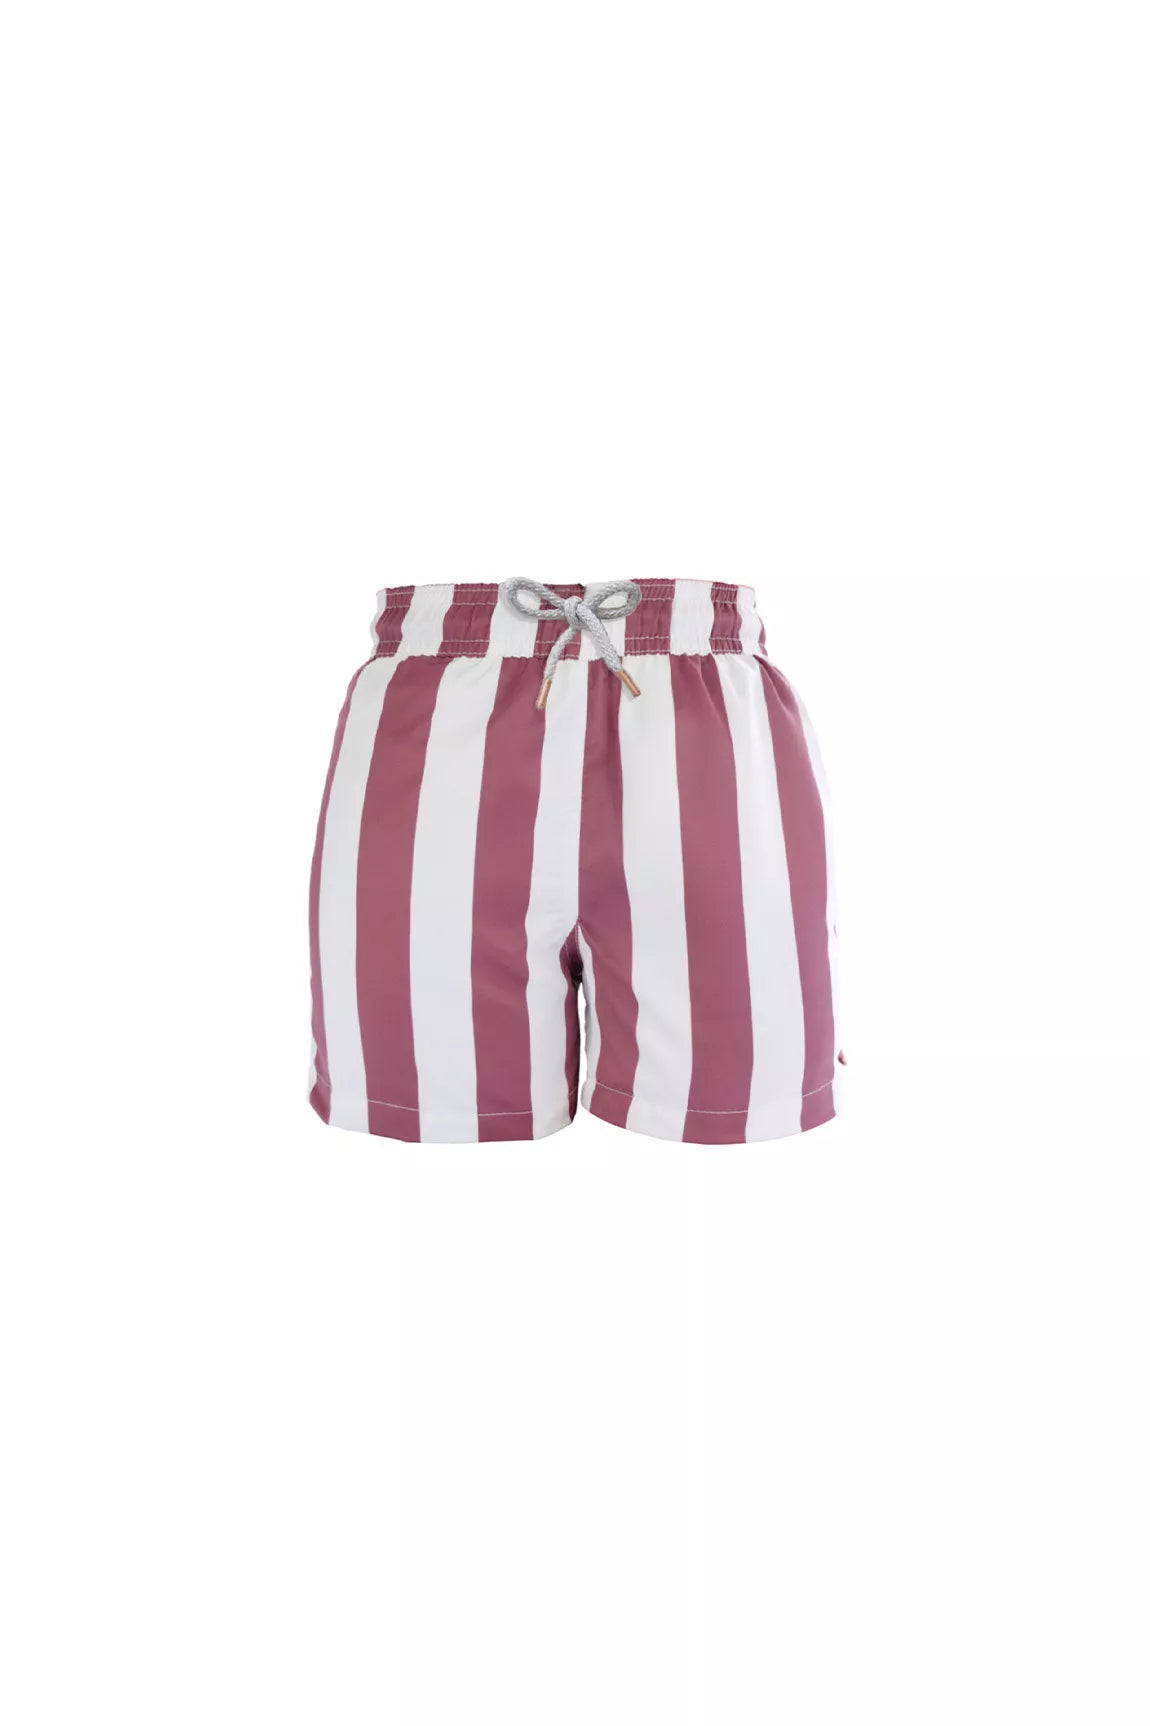 Pantaloneta Mini Swimmer Stripes Cherry